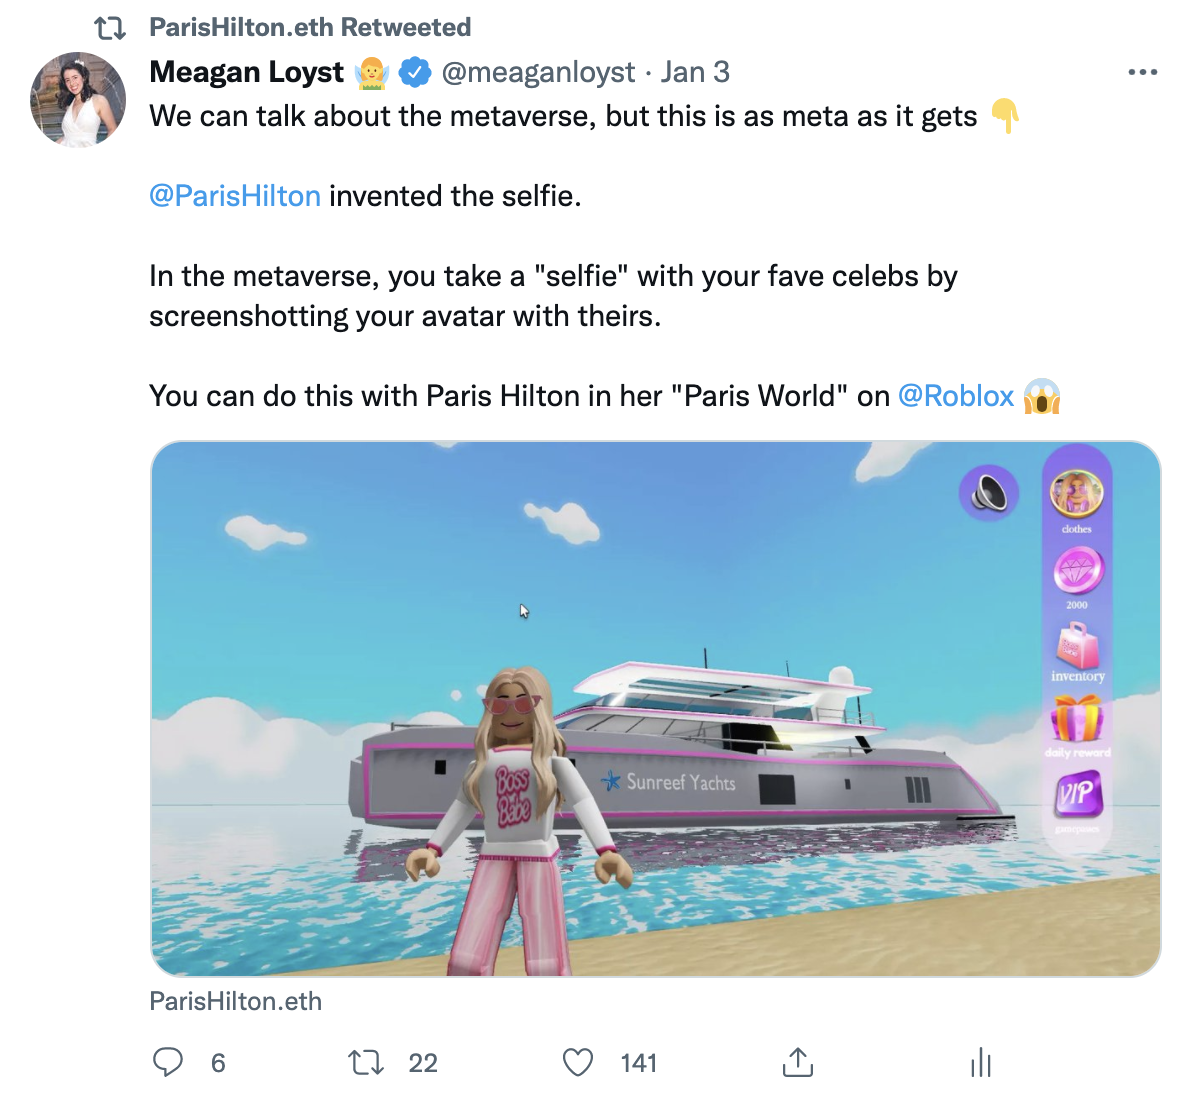 My tweet (RT by Paris!) detailing Paris Hilton & taking selfies in the metaverse